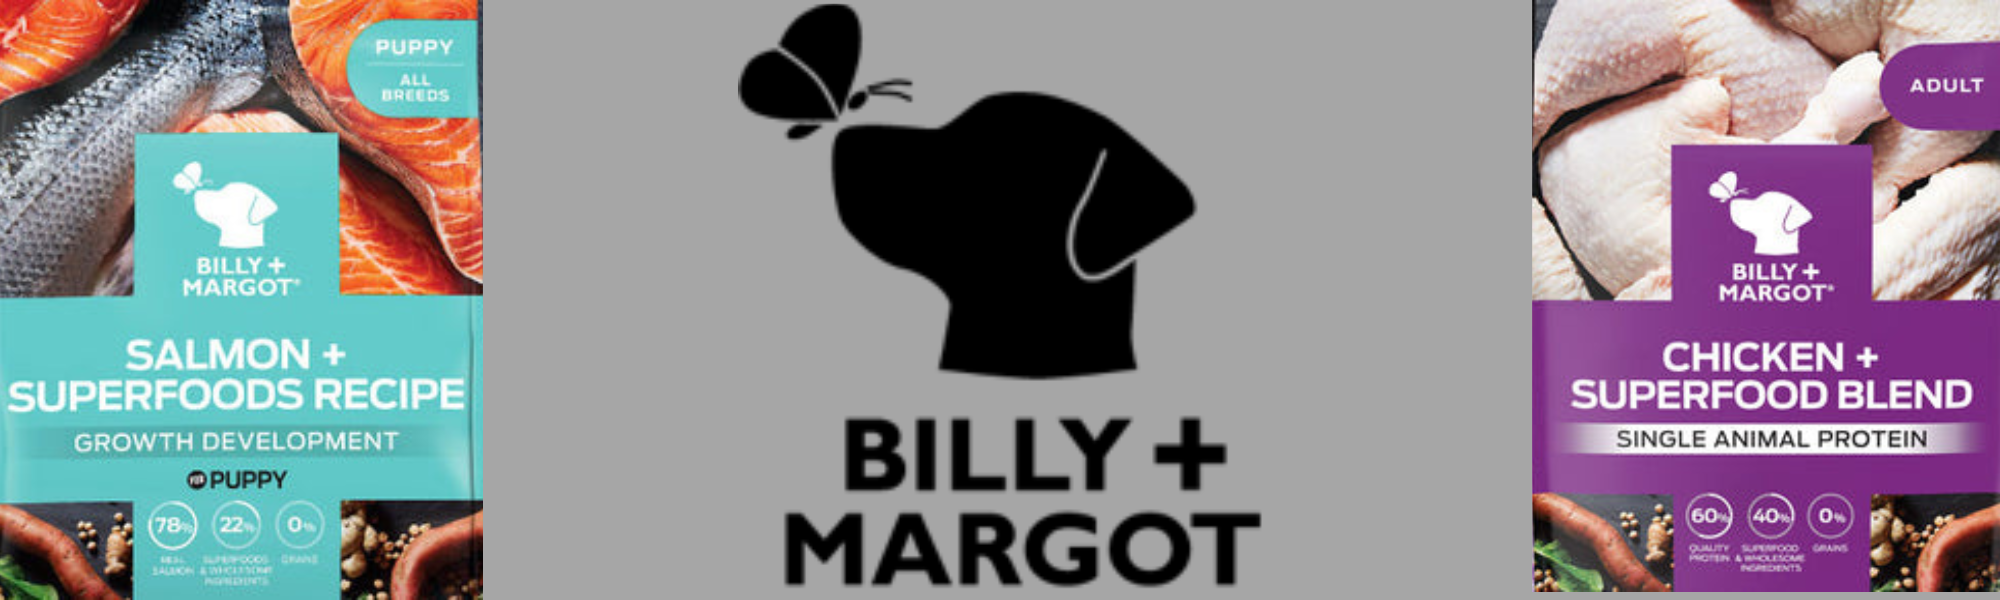 BILLY & MARGOT